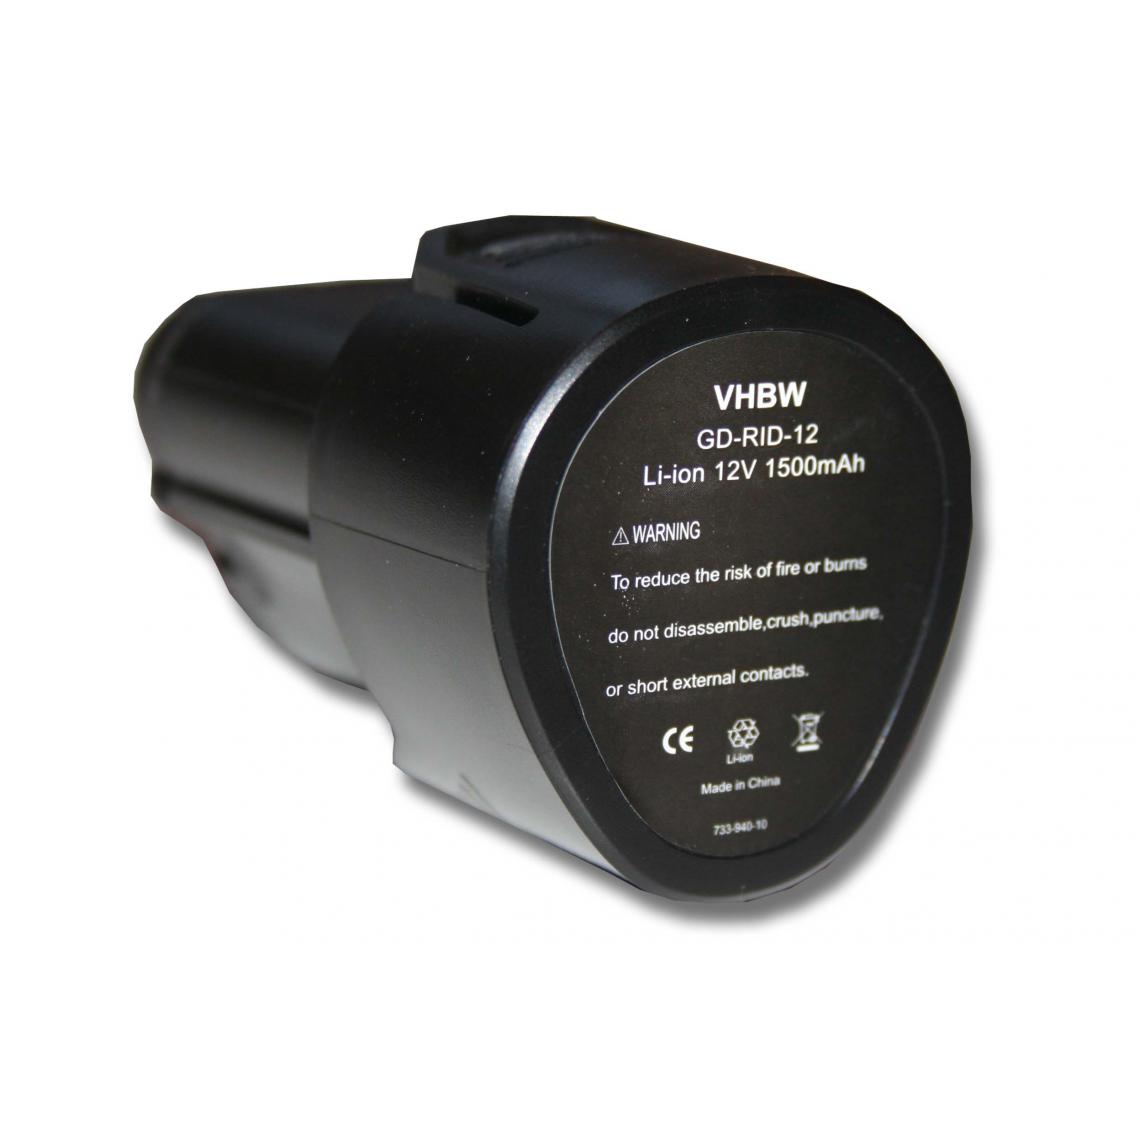 Vhbw - vhbw Batterie remplacement pour Ridgid 130188001, 130446007, 130446011, 200901008, 200901009, 200901019 pour outil électrique (1500mAh Li-ion 12V) - Clouterie